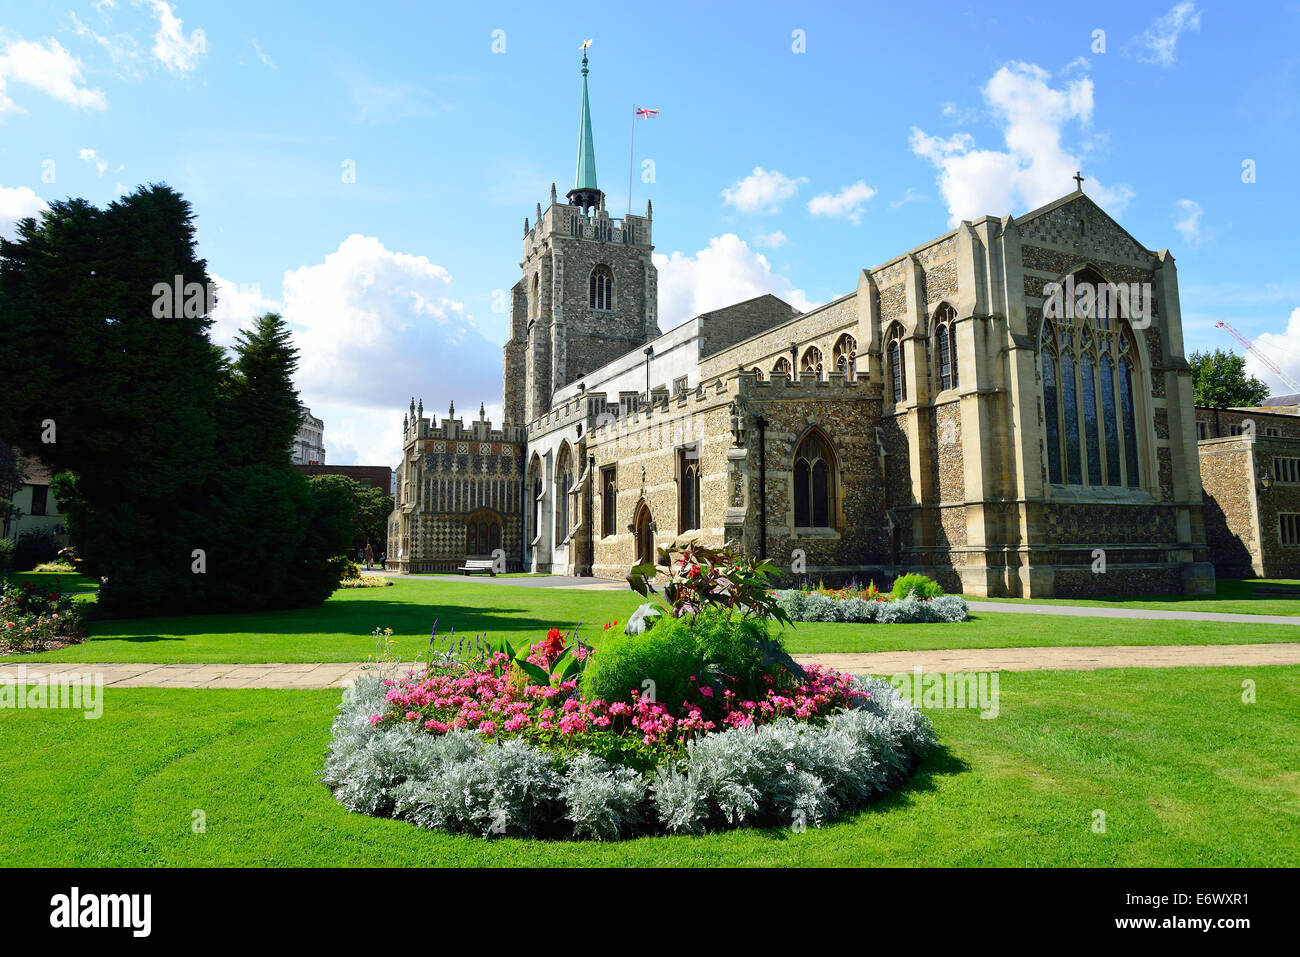 La Cathédrale de Chelmsford (église de St Marie la Vierge, saint Pierre et Saint Cedd), Chelmsford, Essex, Angleterre, Royaume-Uni Banque D'Images